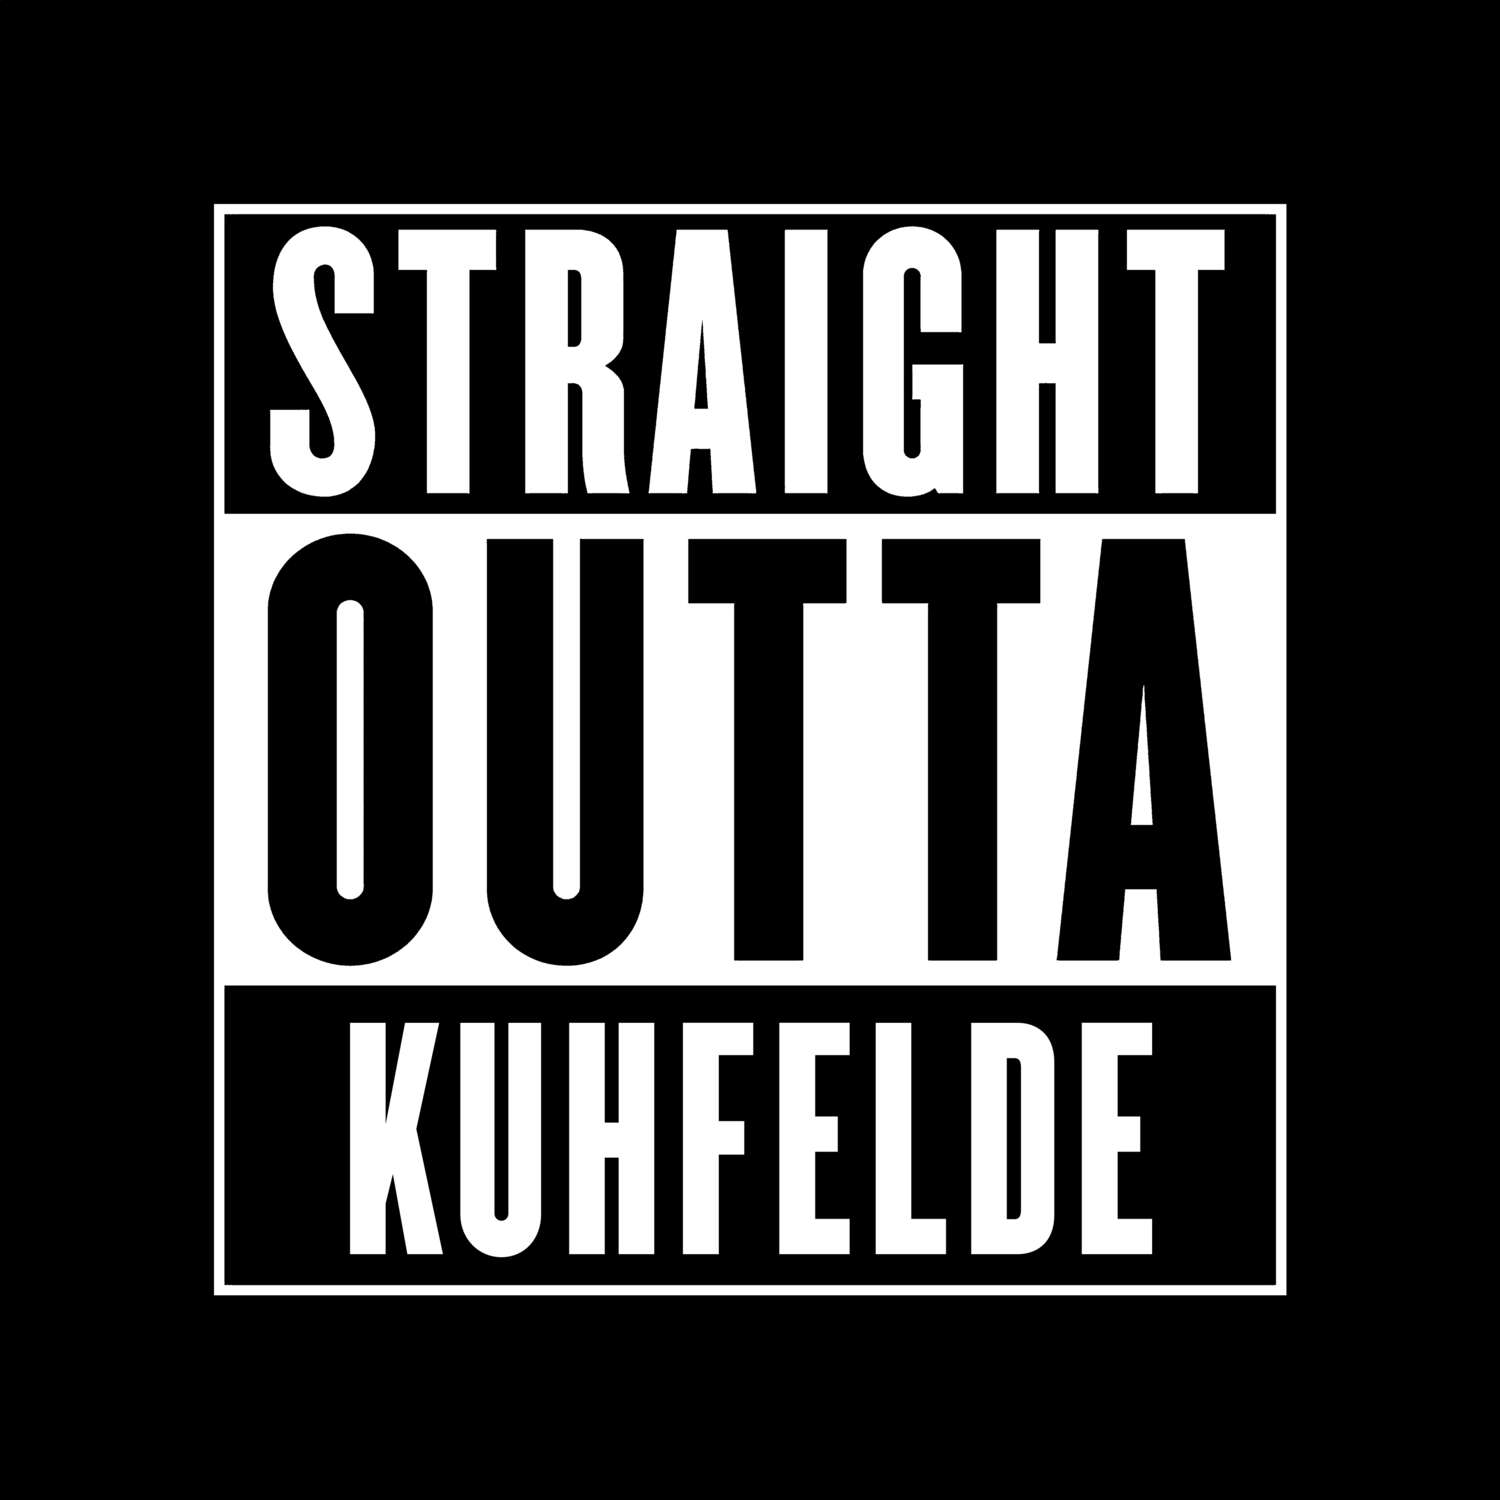 Kuhfelde T-Shirt »Straight Outta«